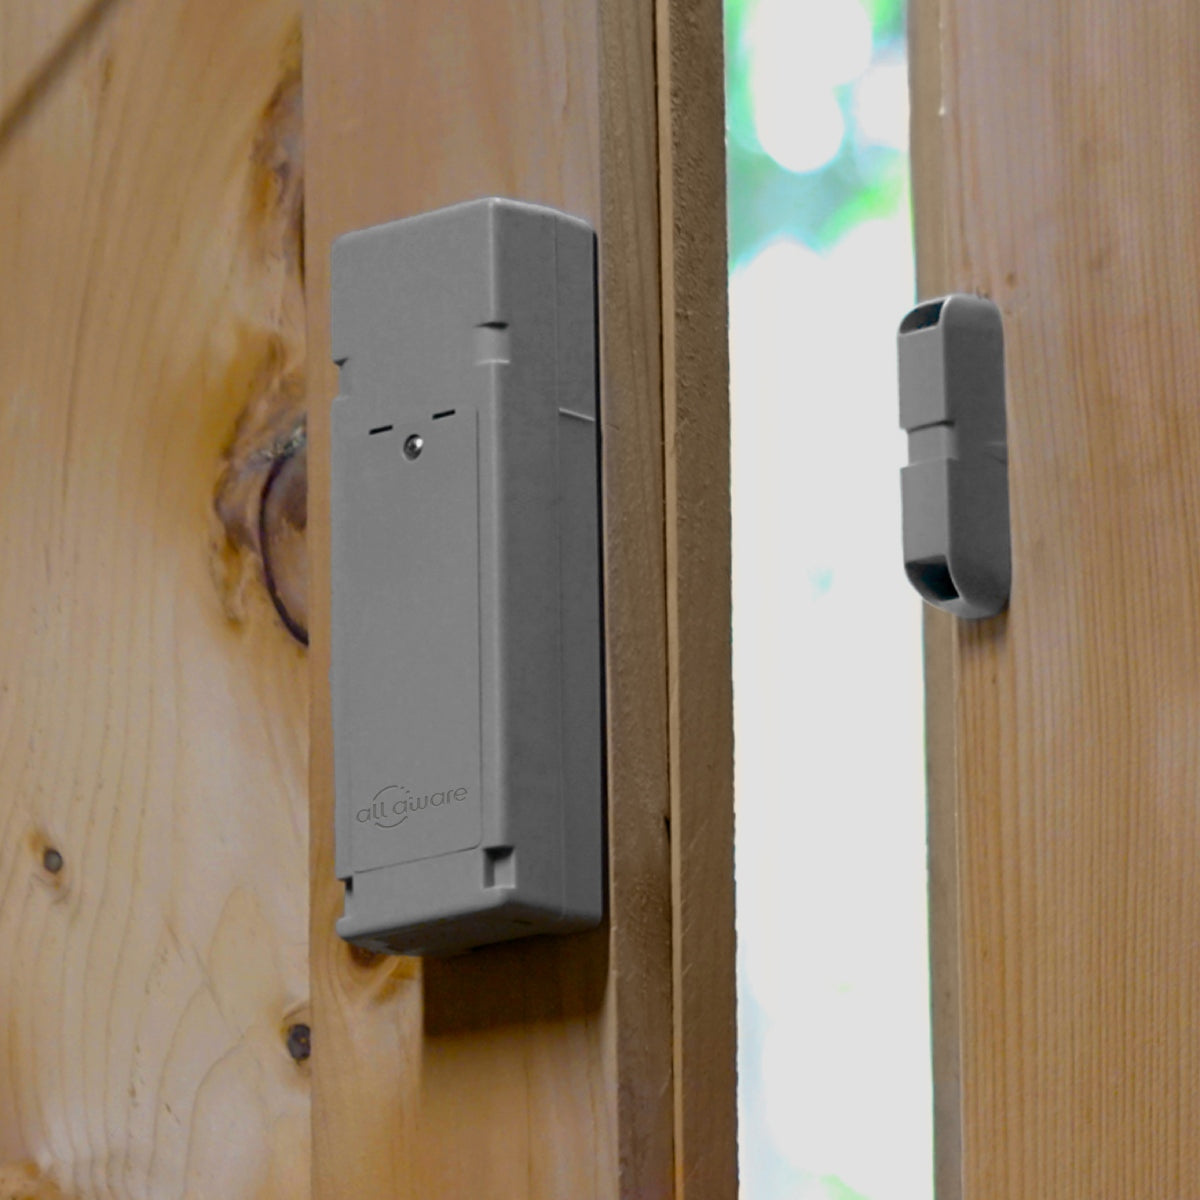 Cellular contact sensor installed on wooden door